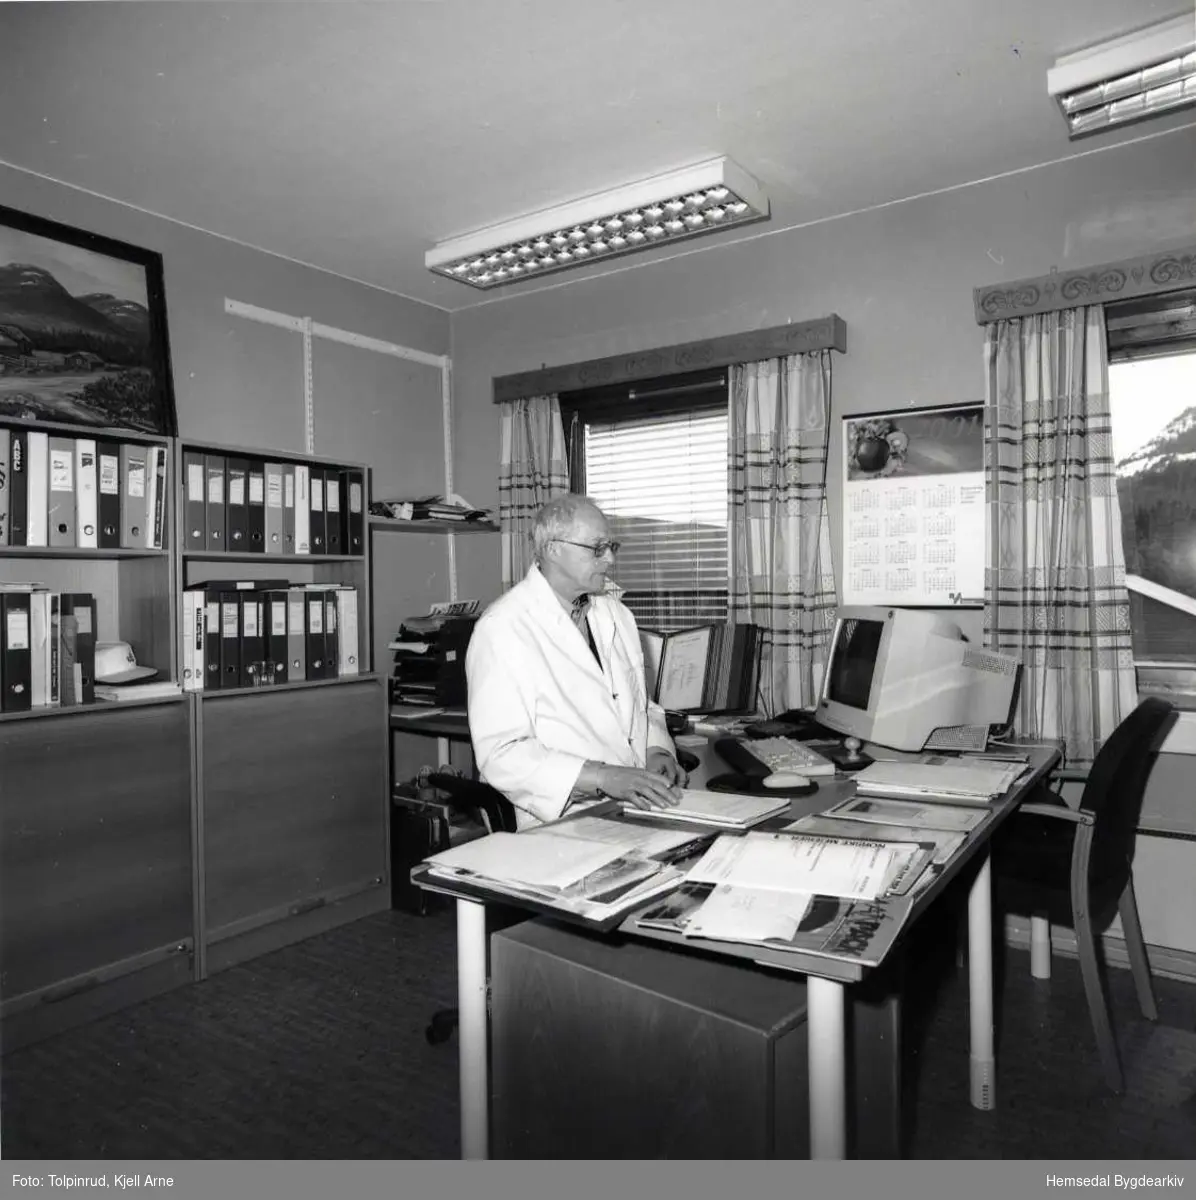 Hemsedal meieri vart nedlagt 21. juli 2001.
Meieristyrar Asbjørn Lein på kontoret.